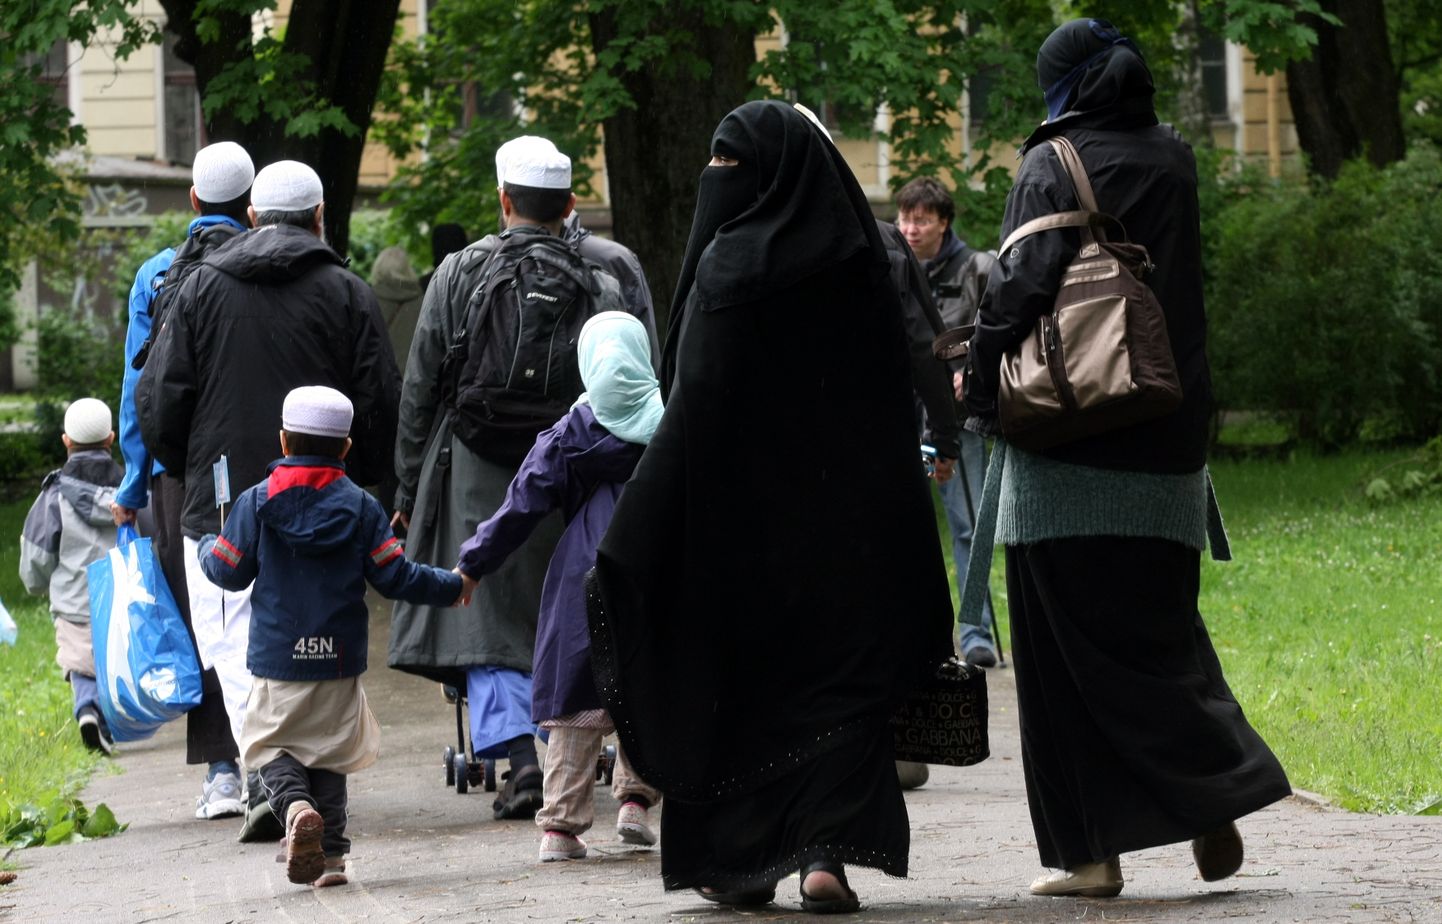 Cilvēki tērpušies tradicionālajā musulmaņu apģērbā pastaigājas Kronvalda parkā.